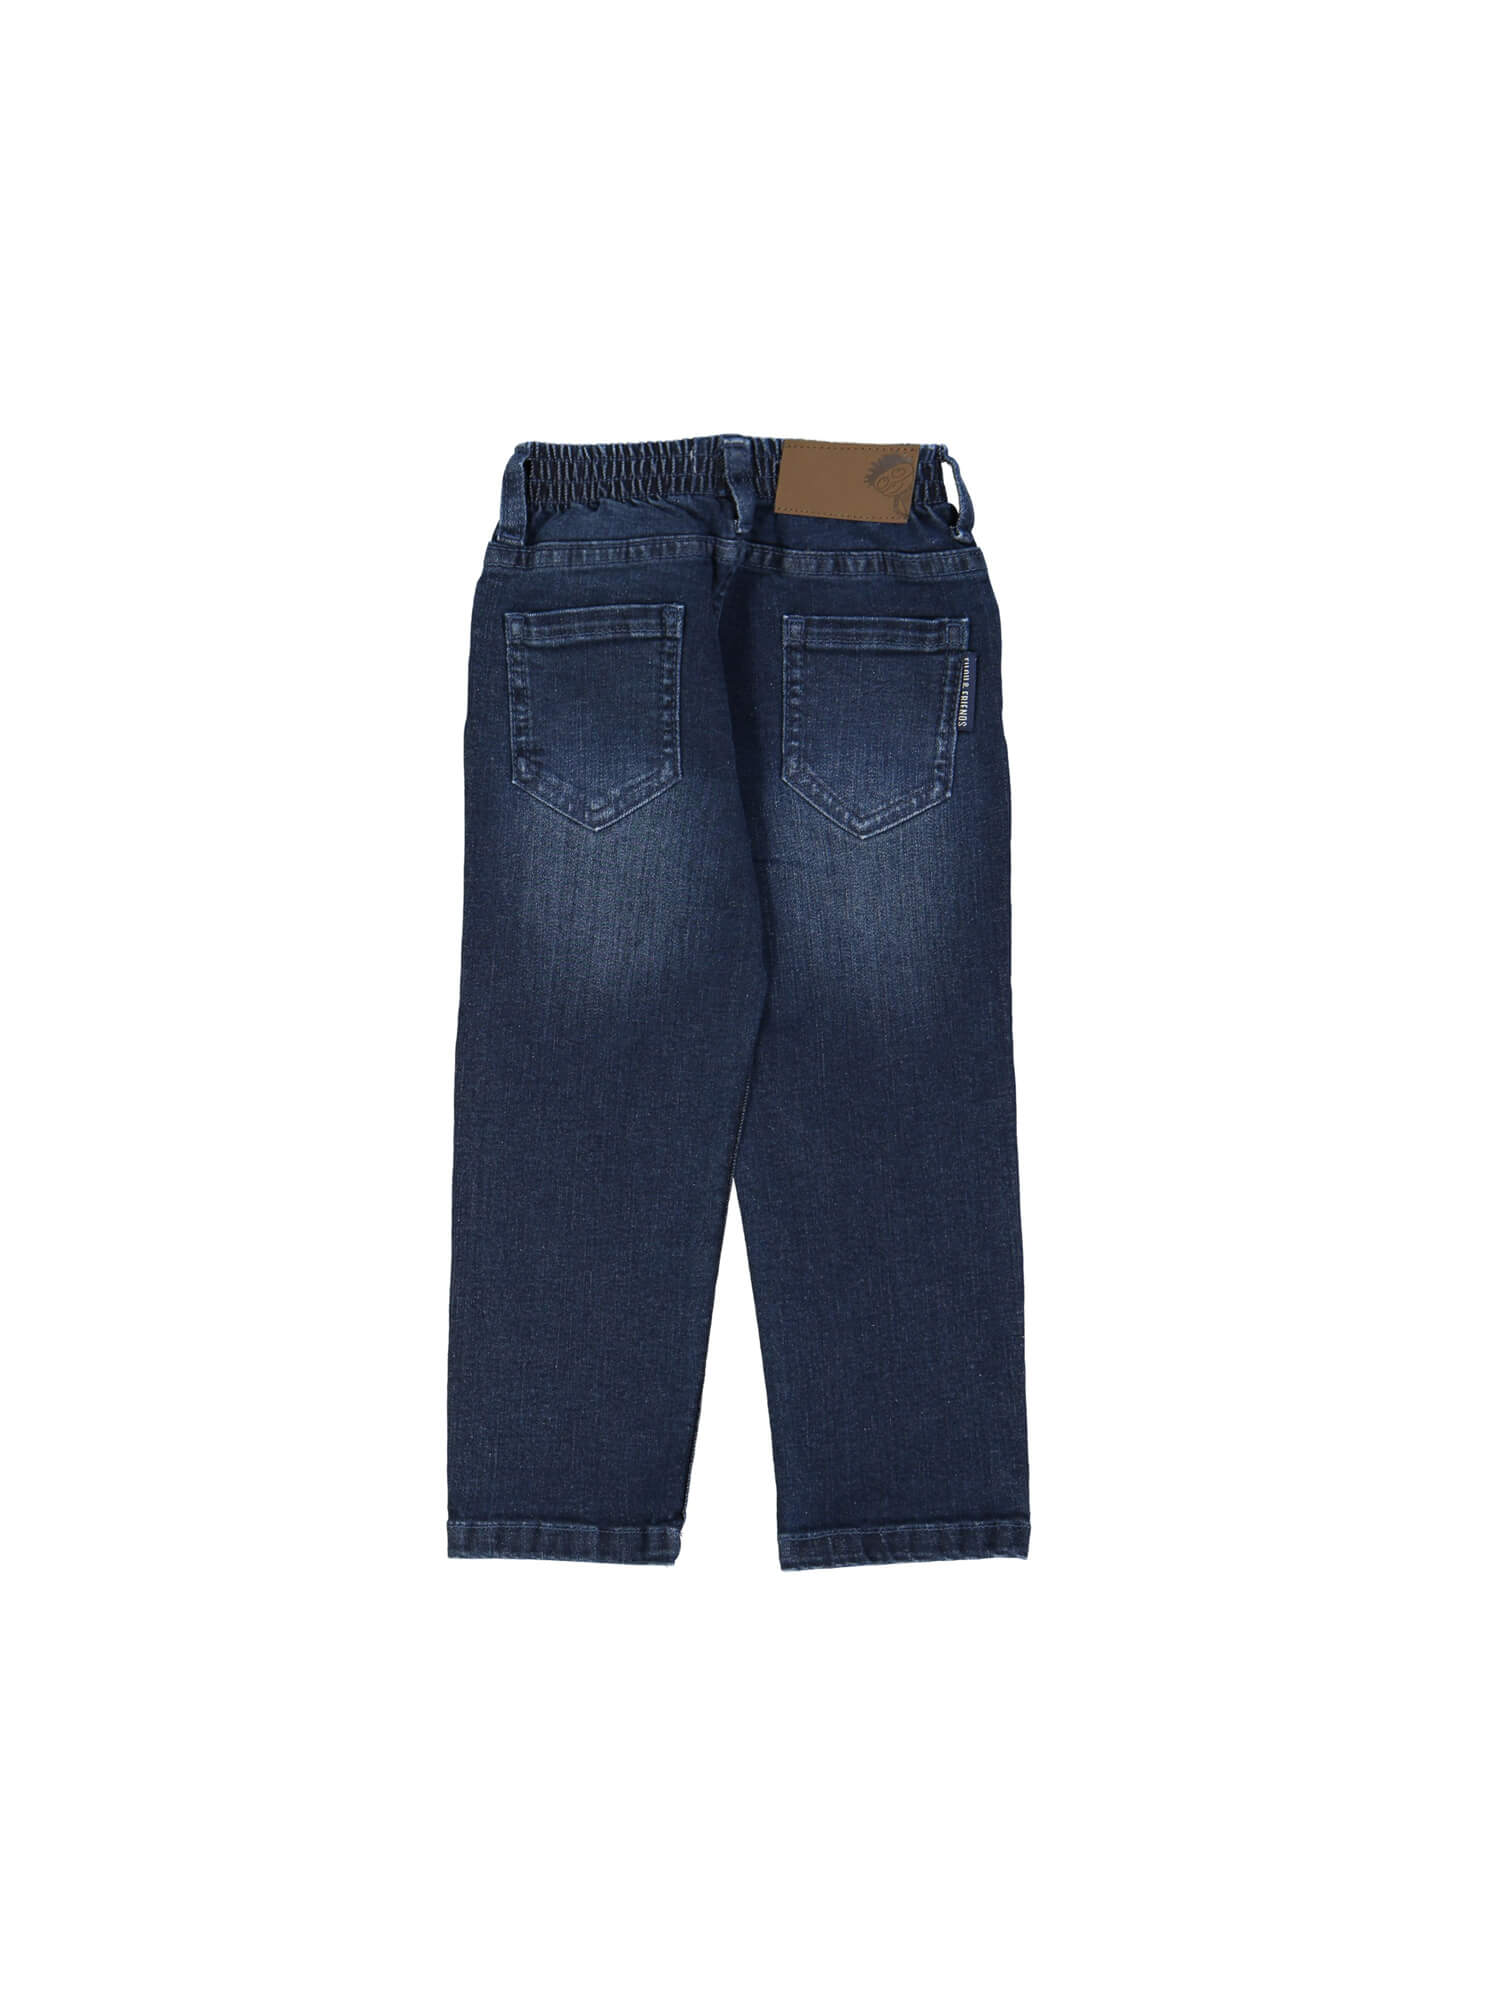 jeans regular blauw rekker 03j